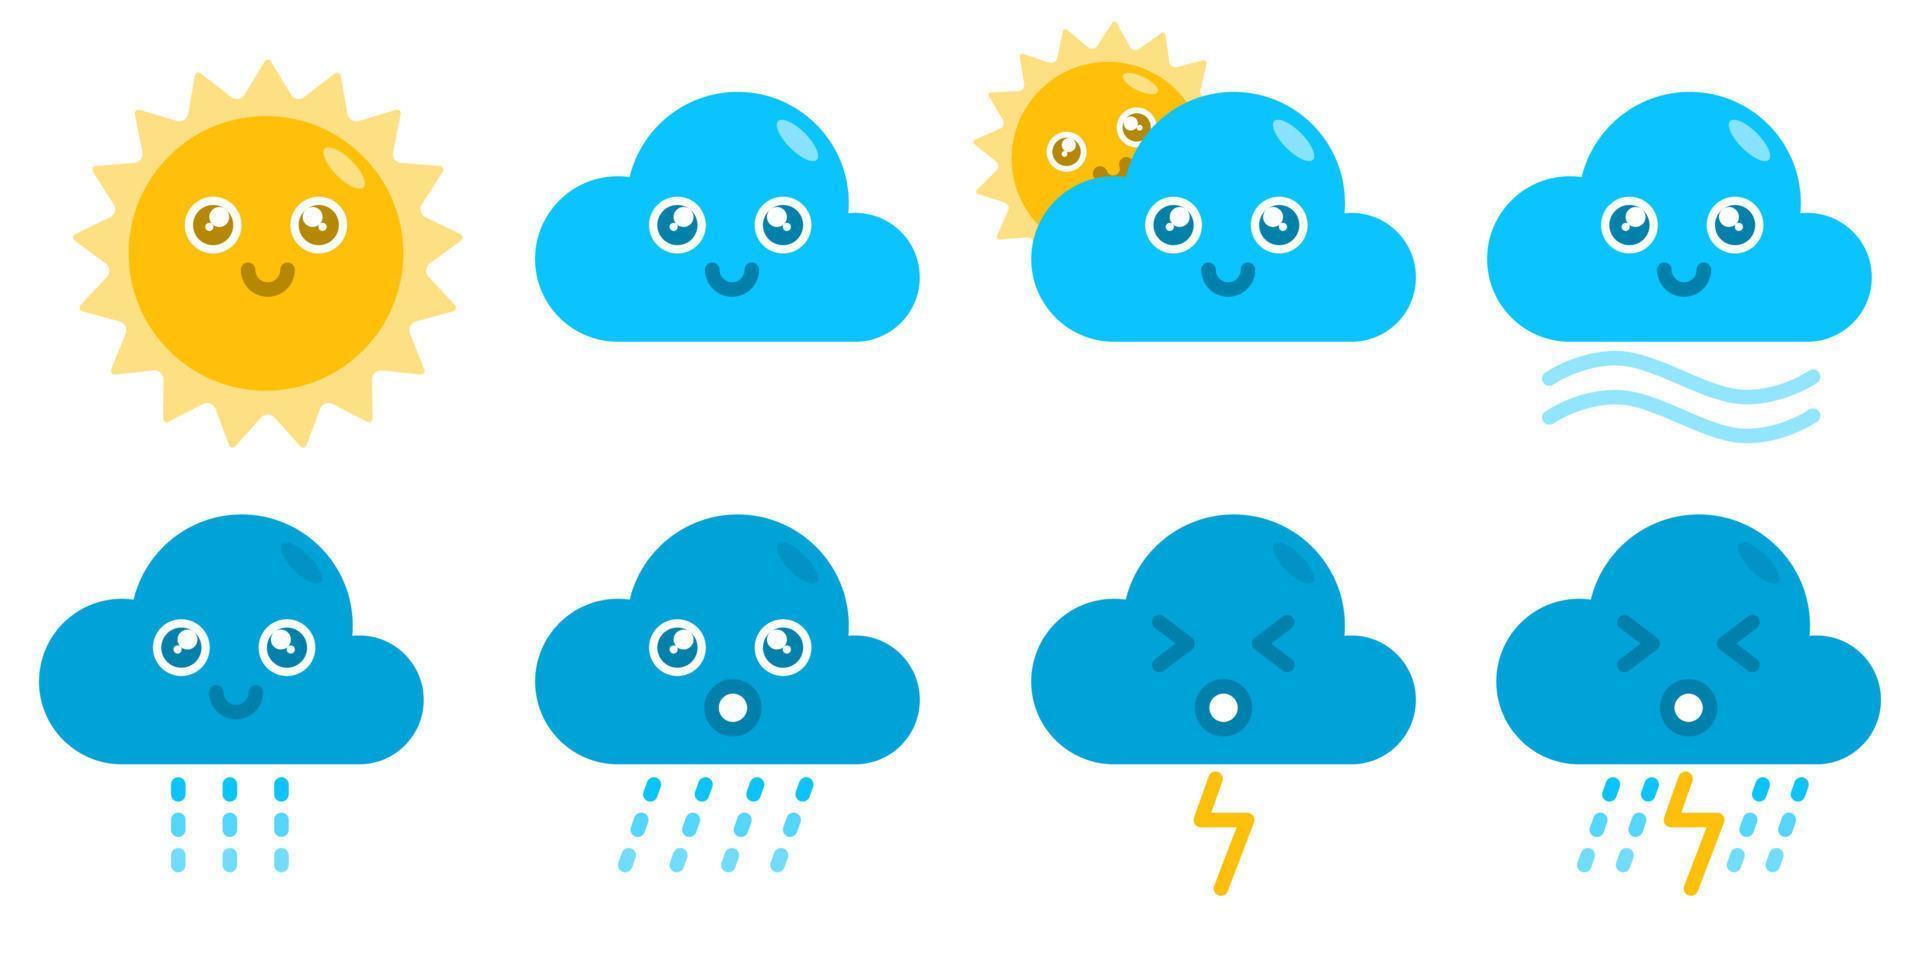 wetter sonne wolke wind regen donner niedlich kawaii cartoon vektorkonzept. flacher illustrationsstil für plakat, web, maskottchen, aufkleber, logo und symbol. vektor